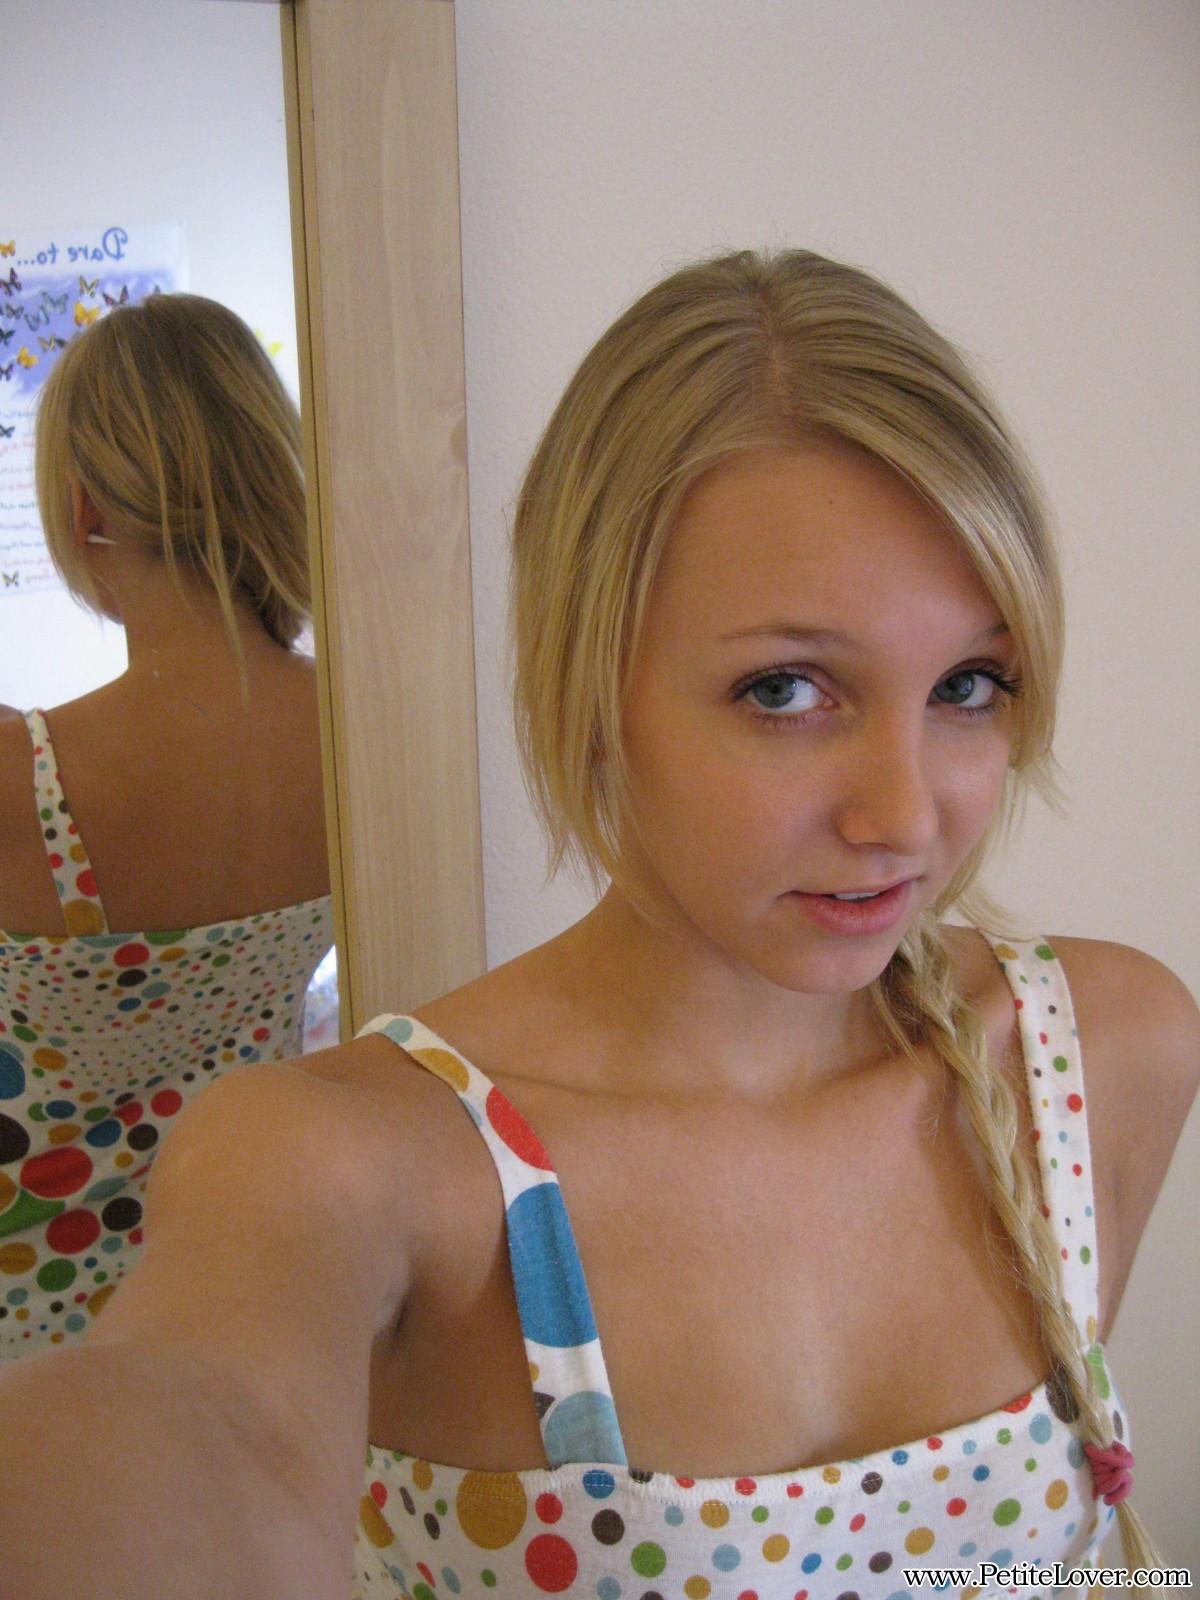 Petite jeune blonde, elle montre son cul sexy et ses seins naturels parfaits.
 #54160214